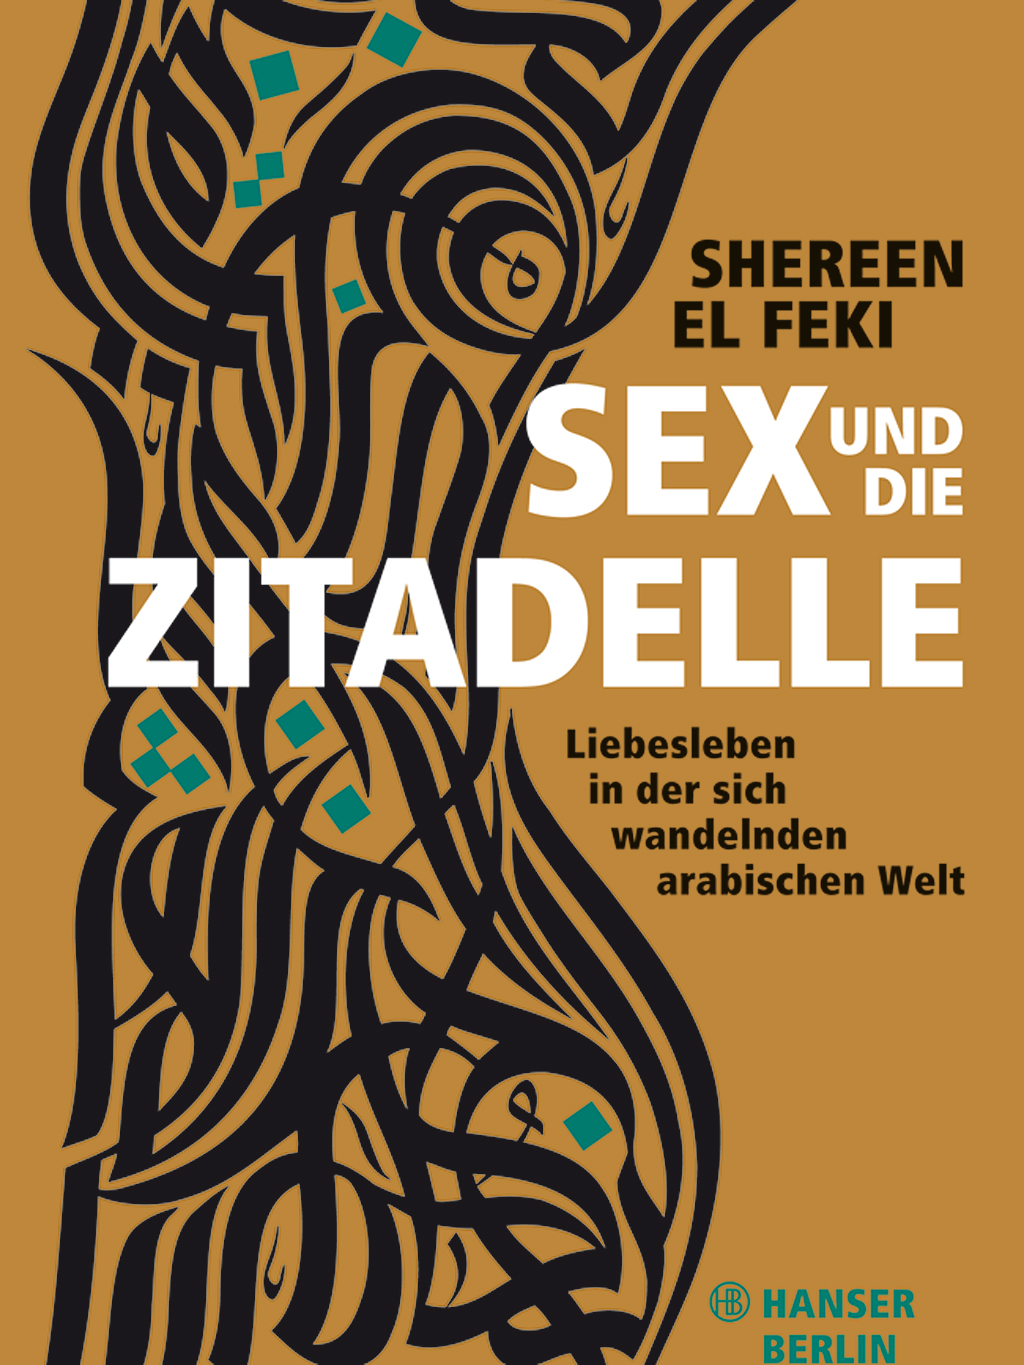 Buchcover Shereen El Feki: "Sex und die Zitadelle" im Hanser-Verlag Berlin